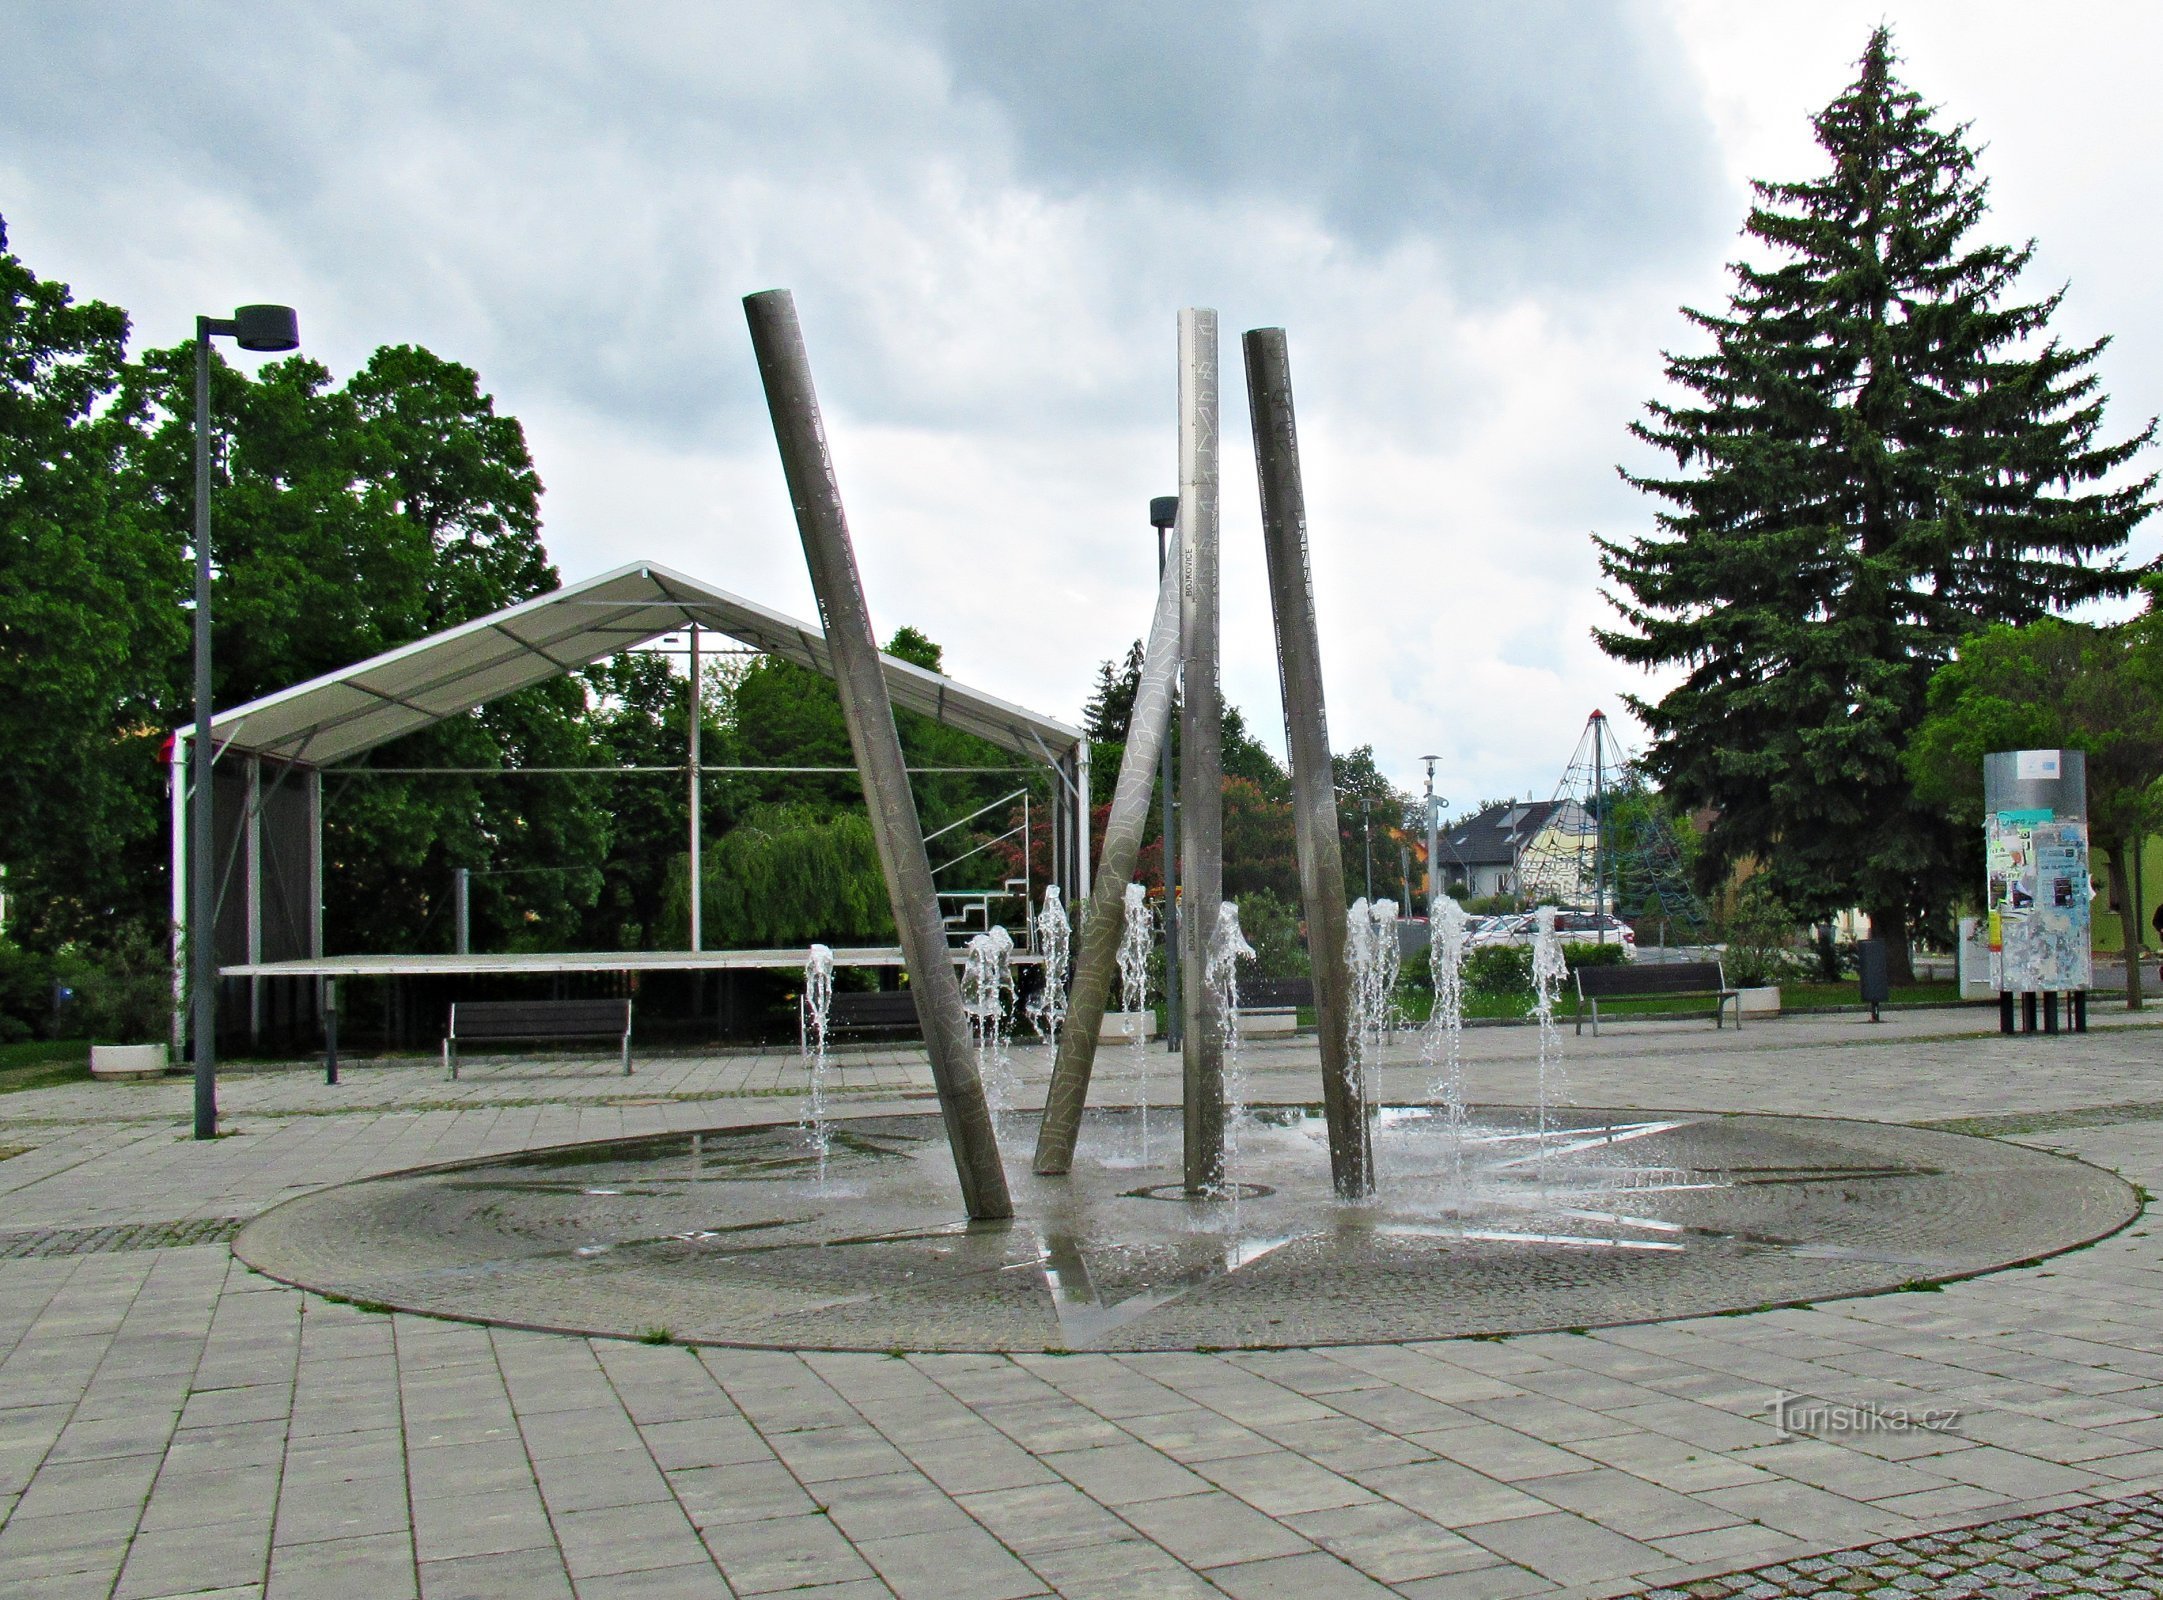 On Tillich square in Bojkovice